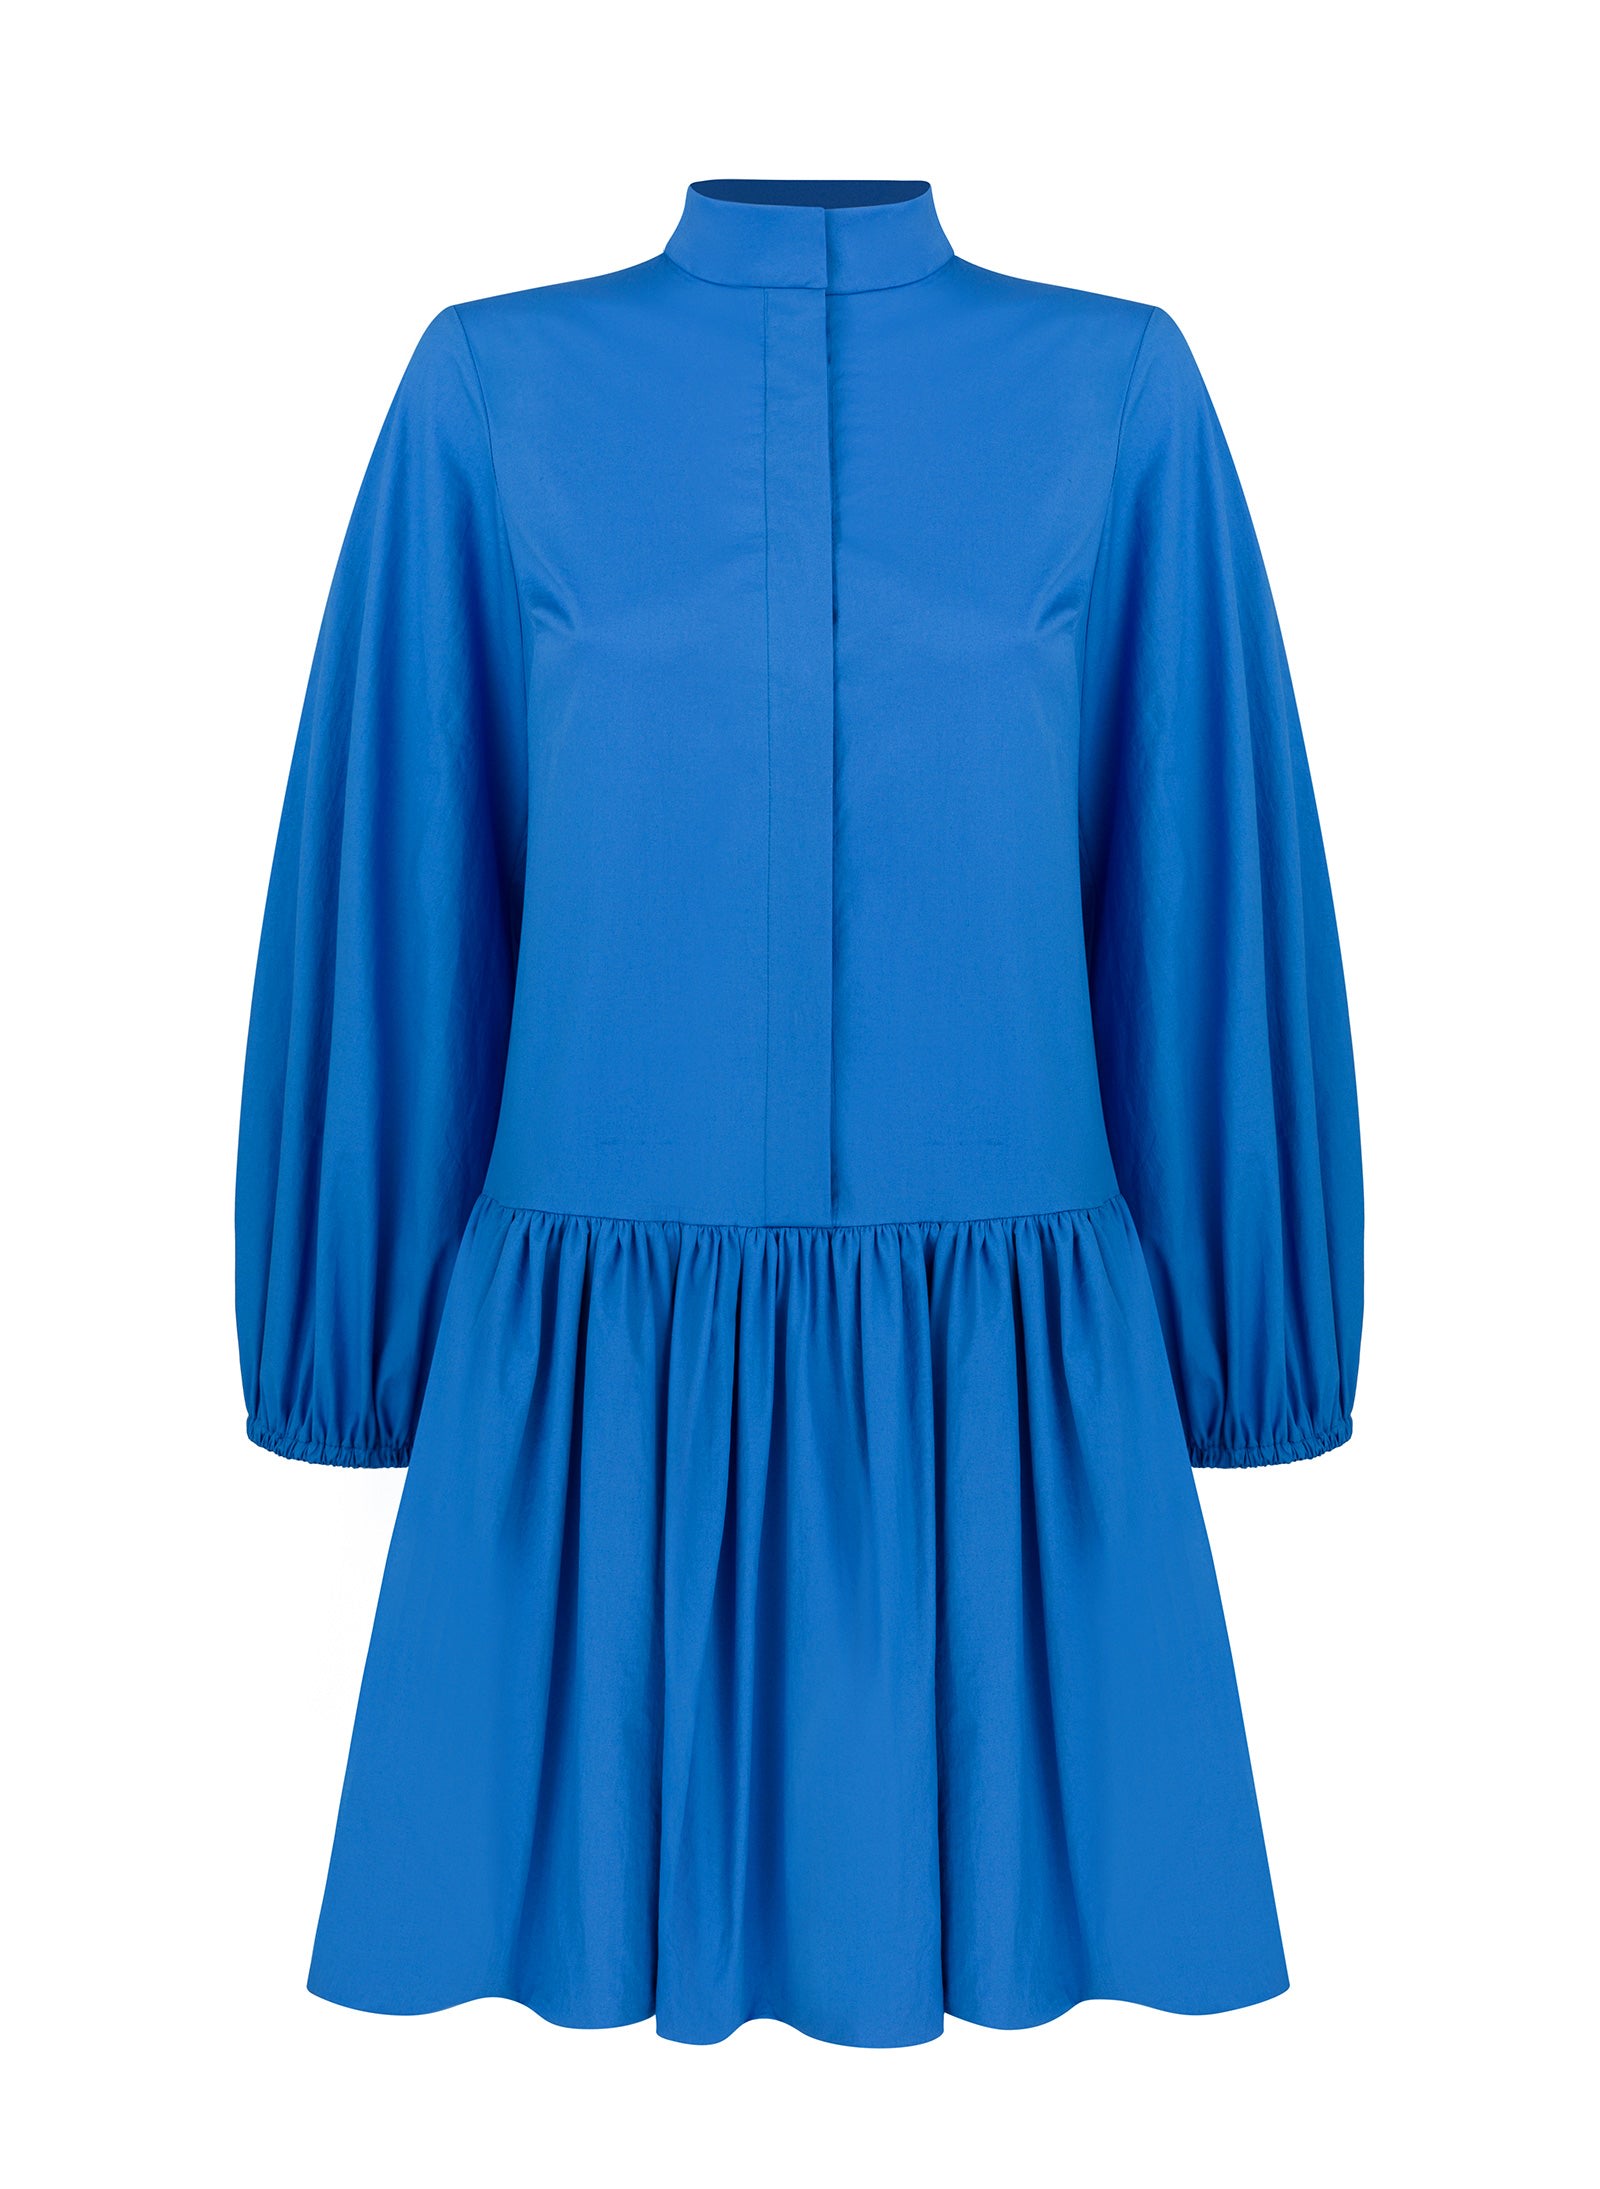 Monica Nera Women's Scarlet Dress - Blue